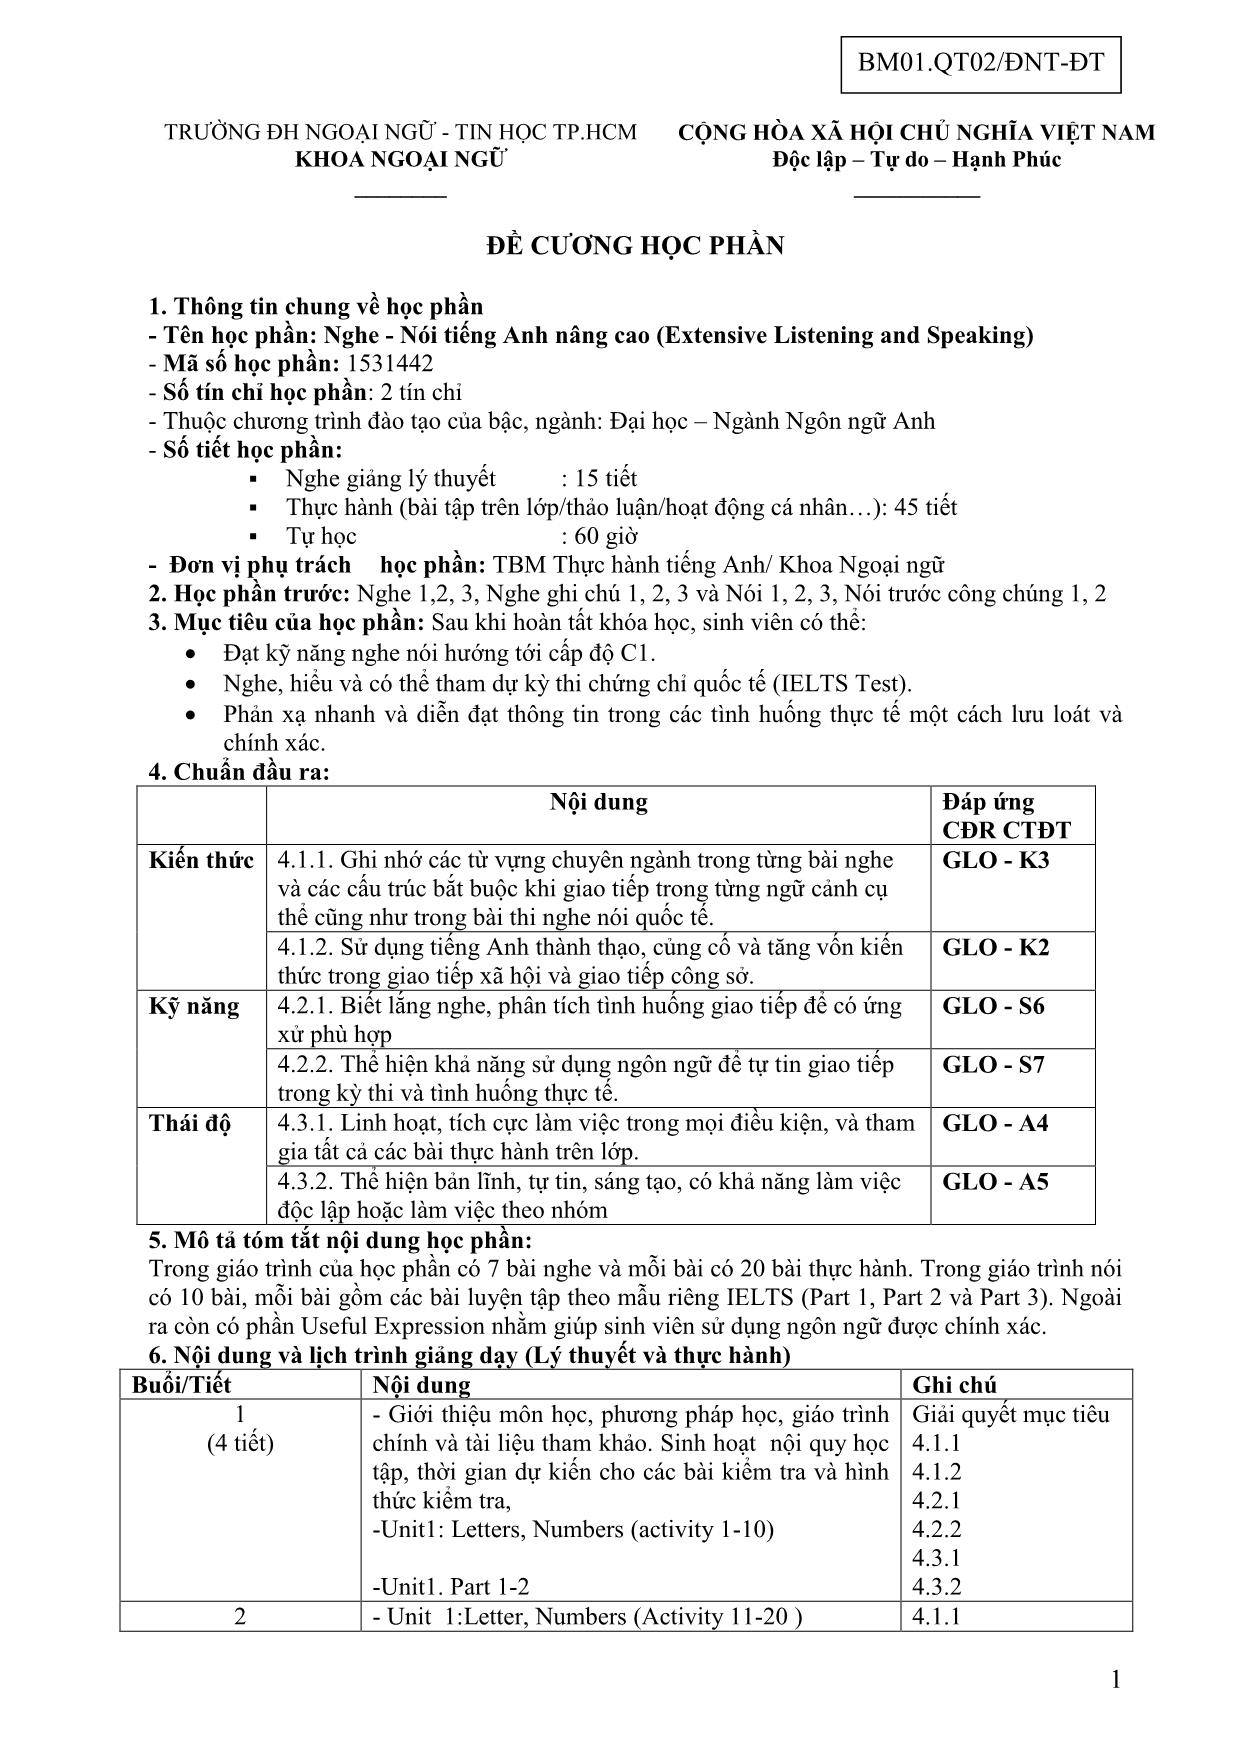 Đề cương học phần Nghe - Nói tiếng Anh nâng cao (Extensive Listening and Speaking) trang 1